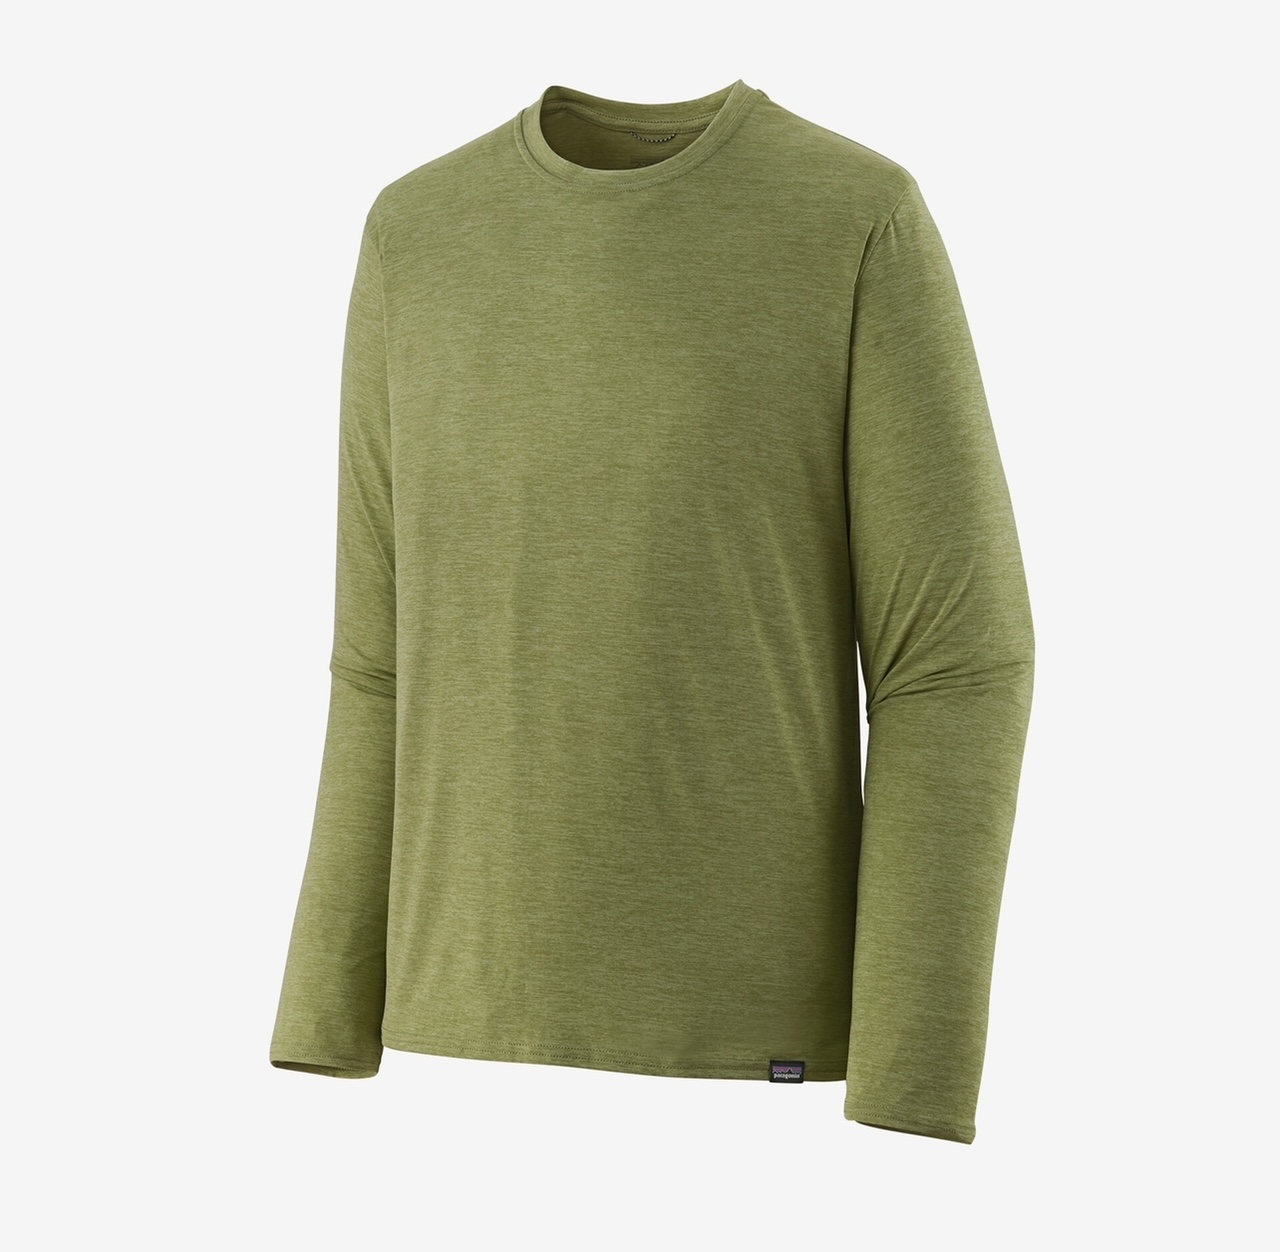 Patagonia M's L/S Capilene Cool Daily Shirt - Buckhorn Green: Light Buckhorn Green X-Dye - Medium